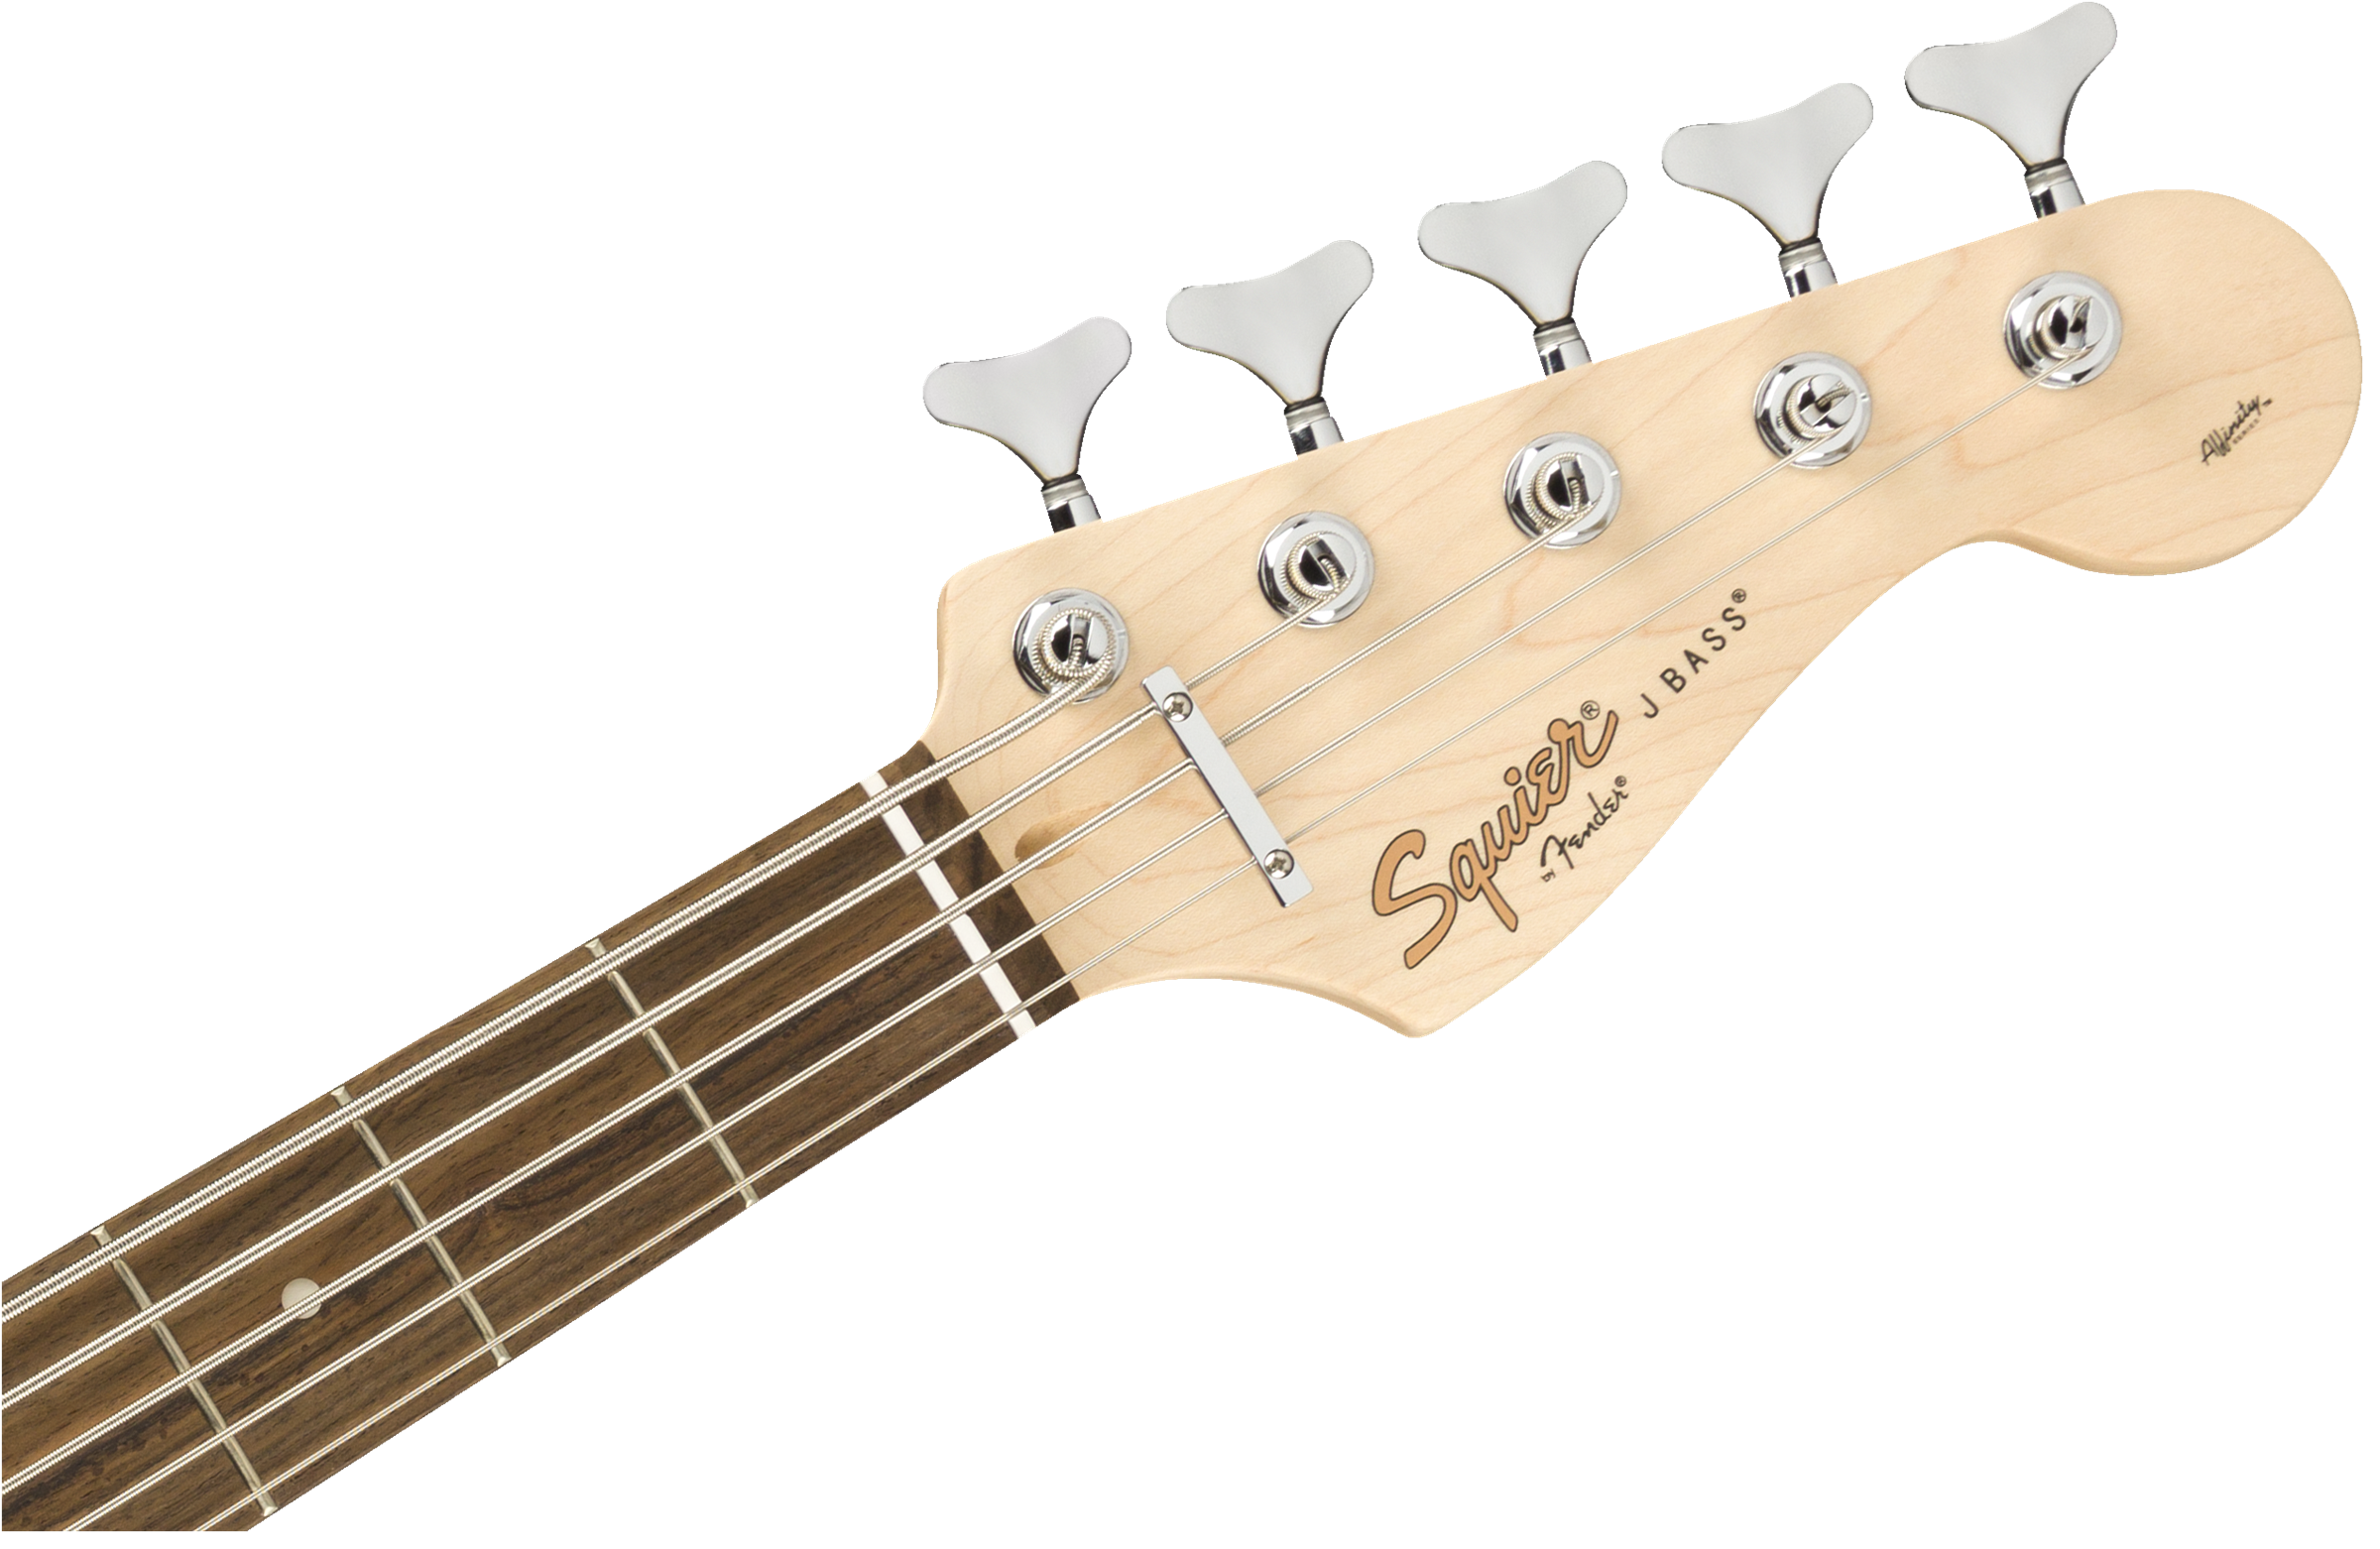 Squier Affinity Series Jazz Bass V, Brown Sunburst 0371575532